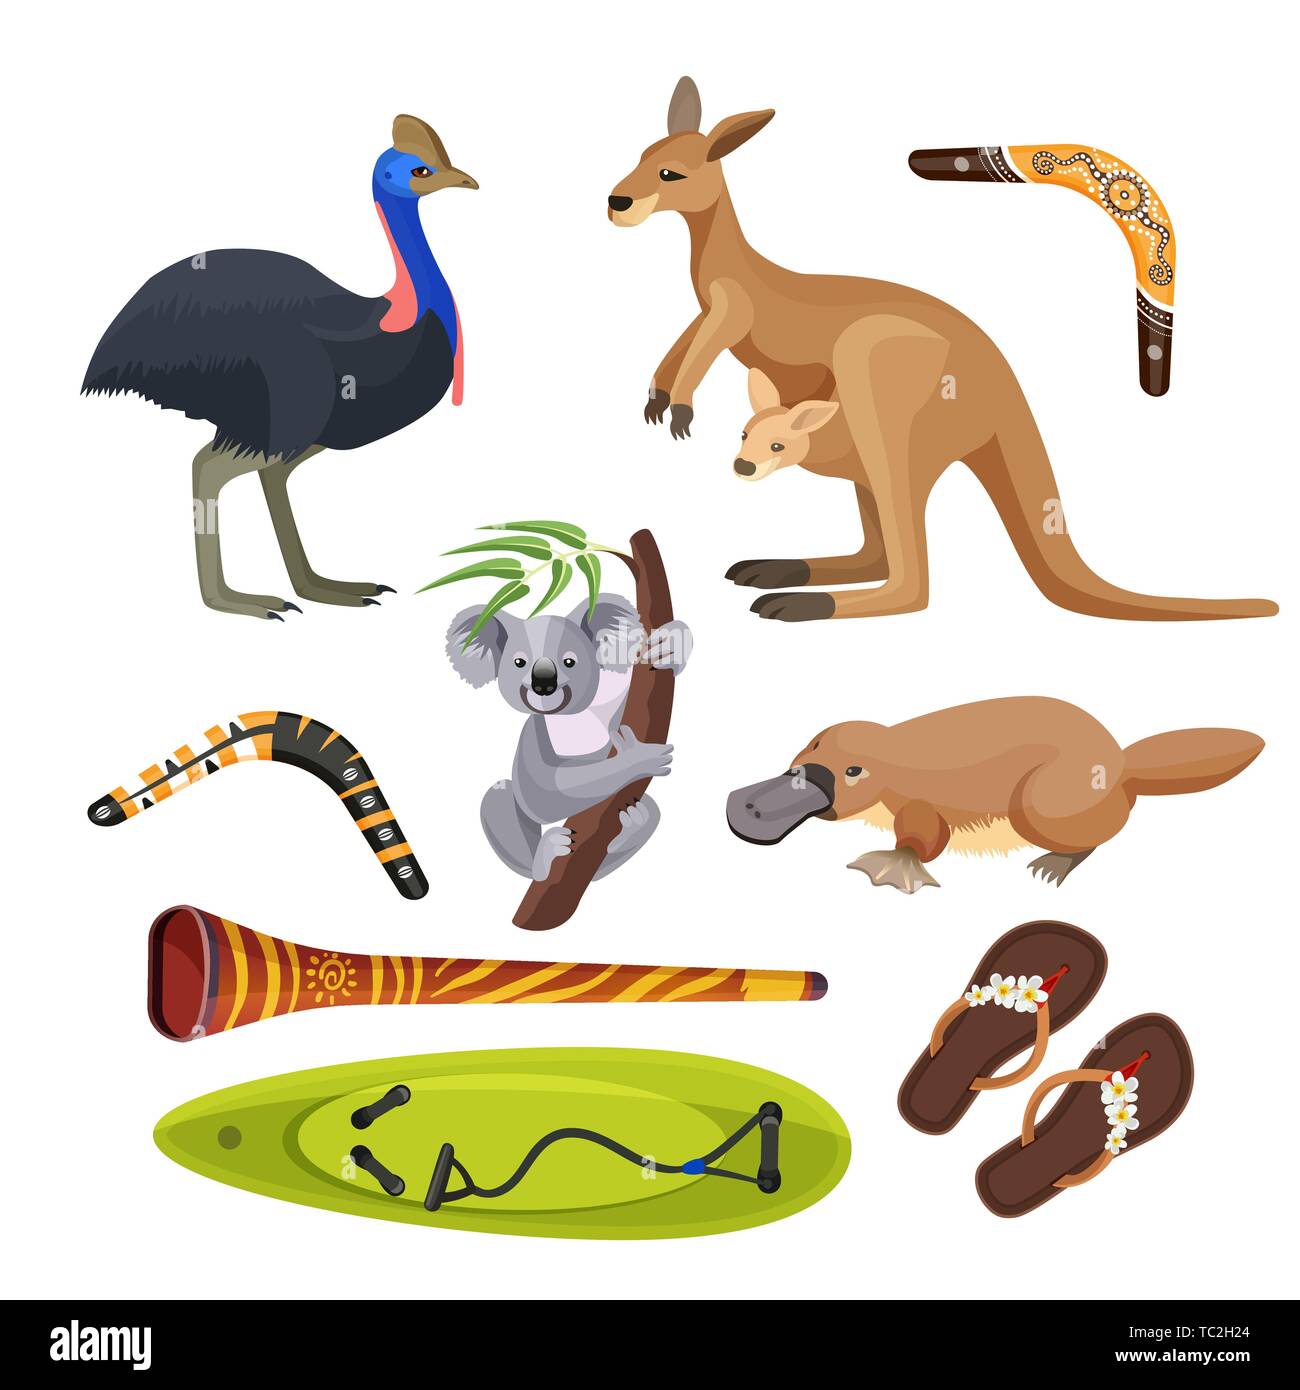 Australien Symbole isoliert. Koala, Känguruh, Surfbrett, Boomerang, Strauß, Platypus, Didgeridoo Stock Vektor